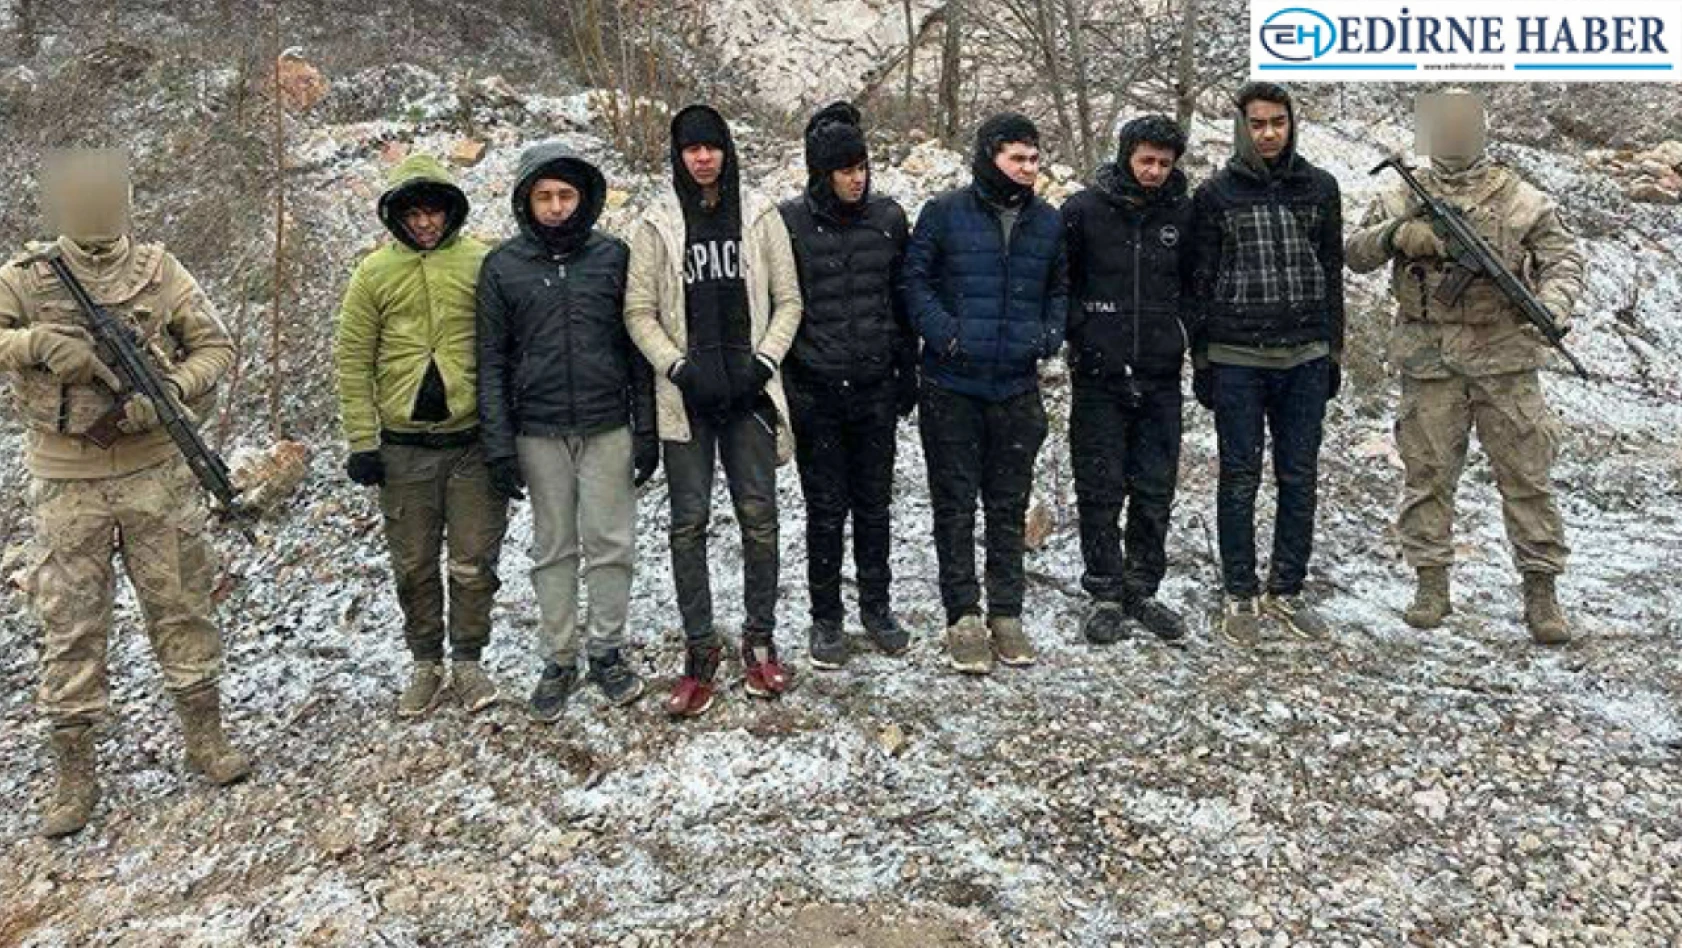 Edirne'de 3 organizatör ve 169 düzensiz göçmen yakalandı